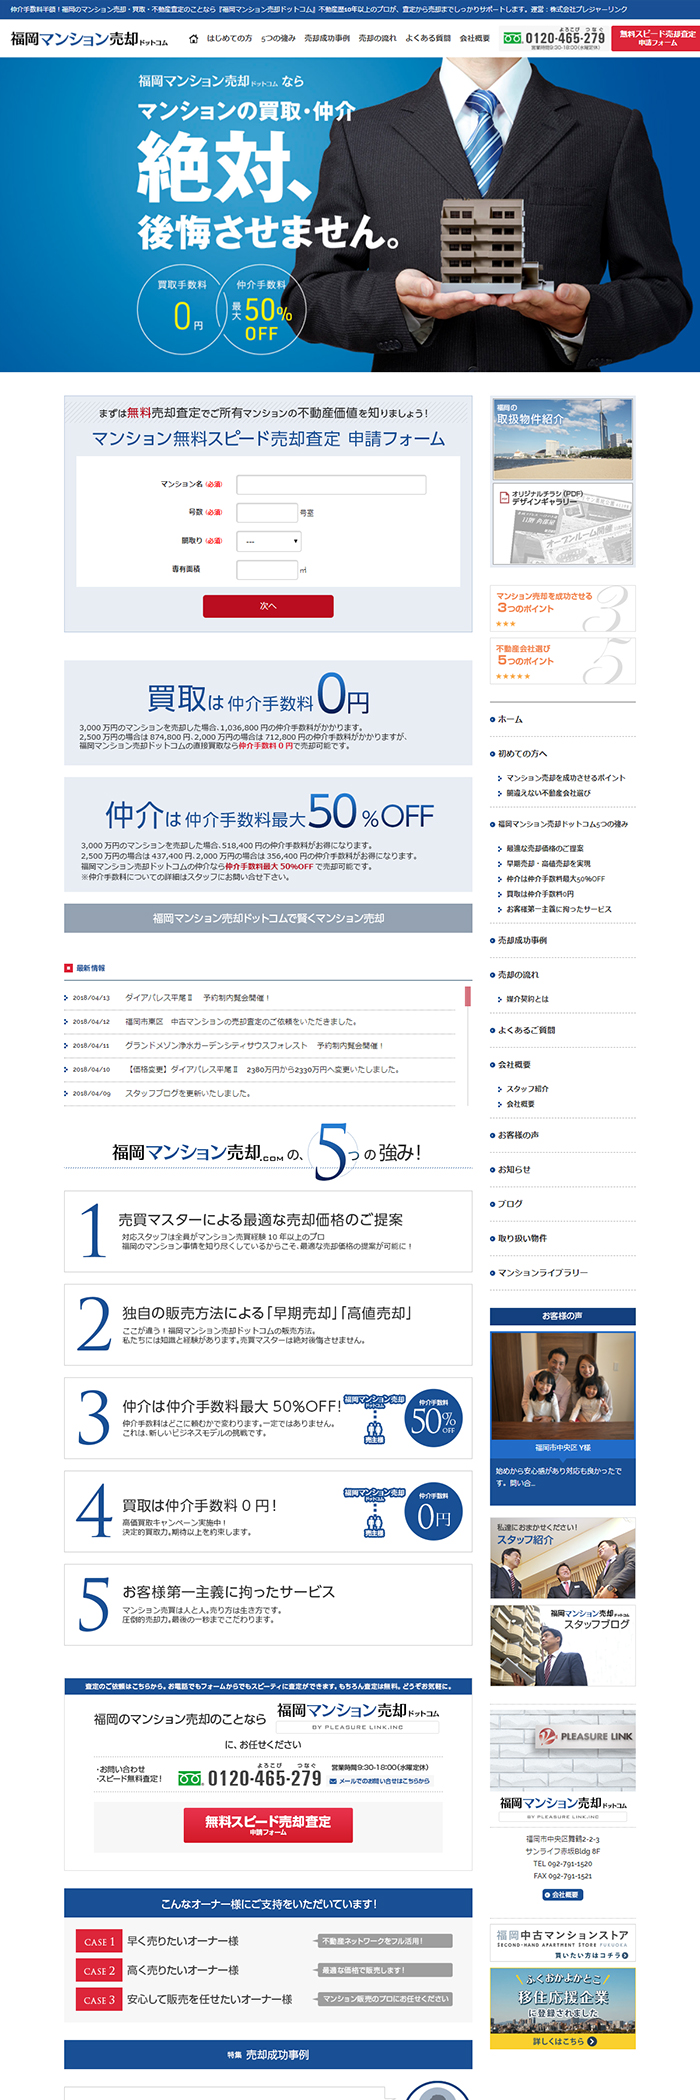 福岡マンション売却ドットコム様ホームページ制作実績 デスクトップイメージ